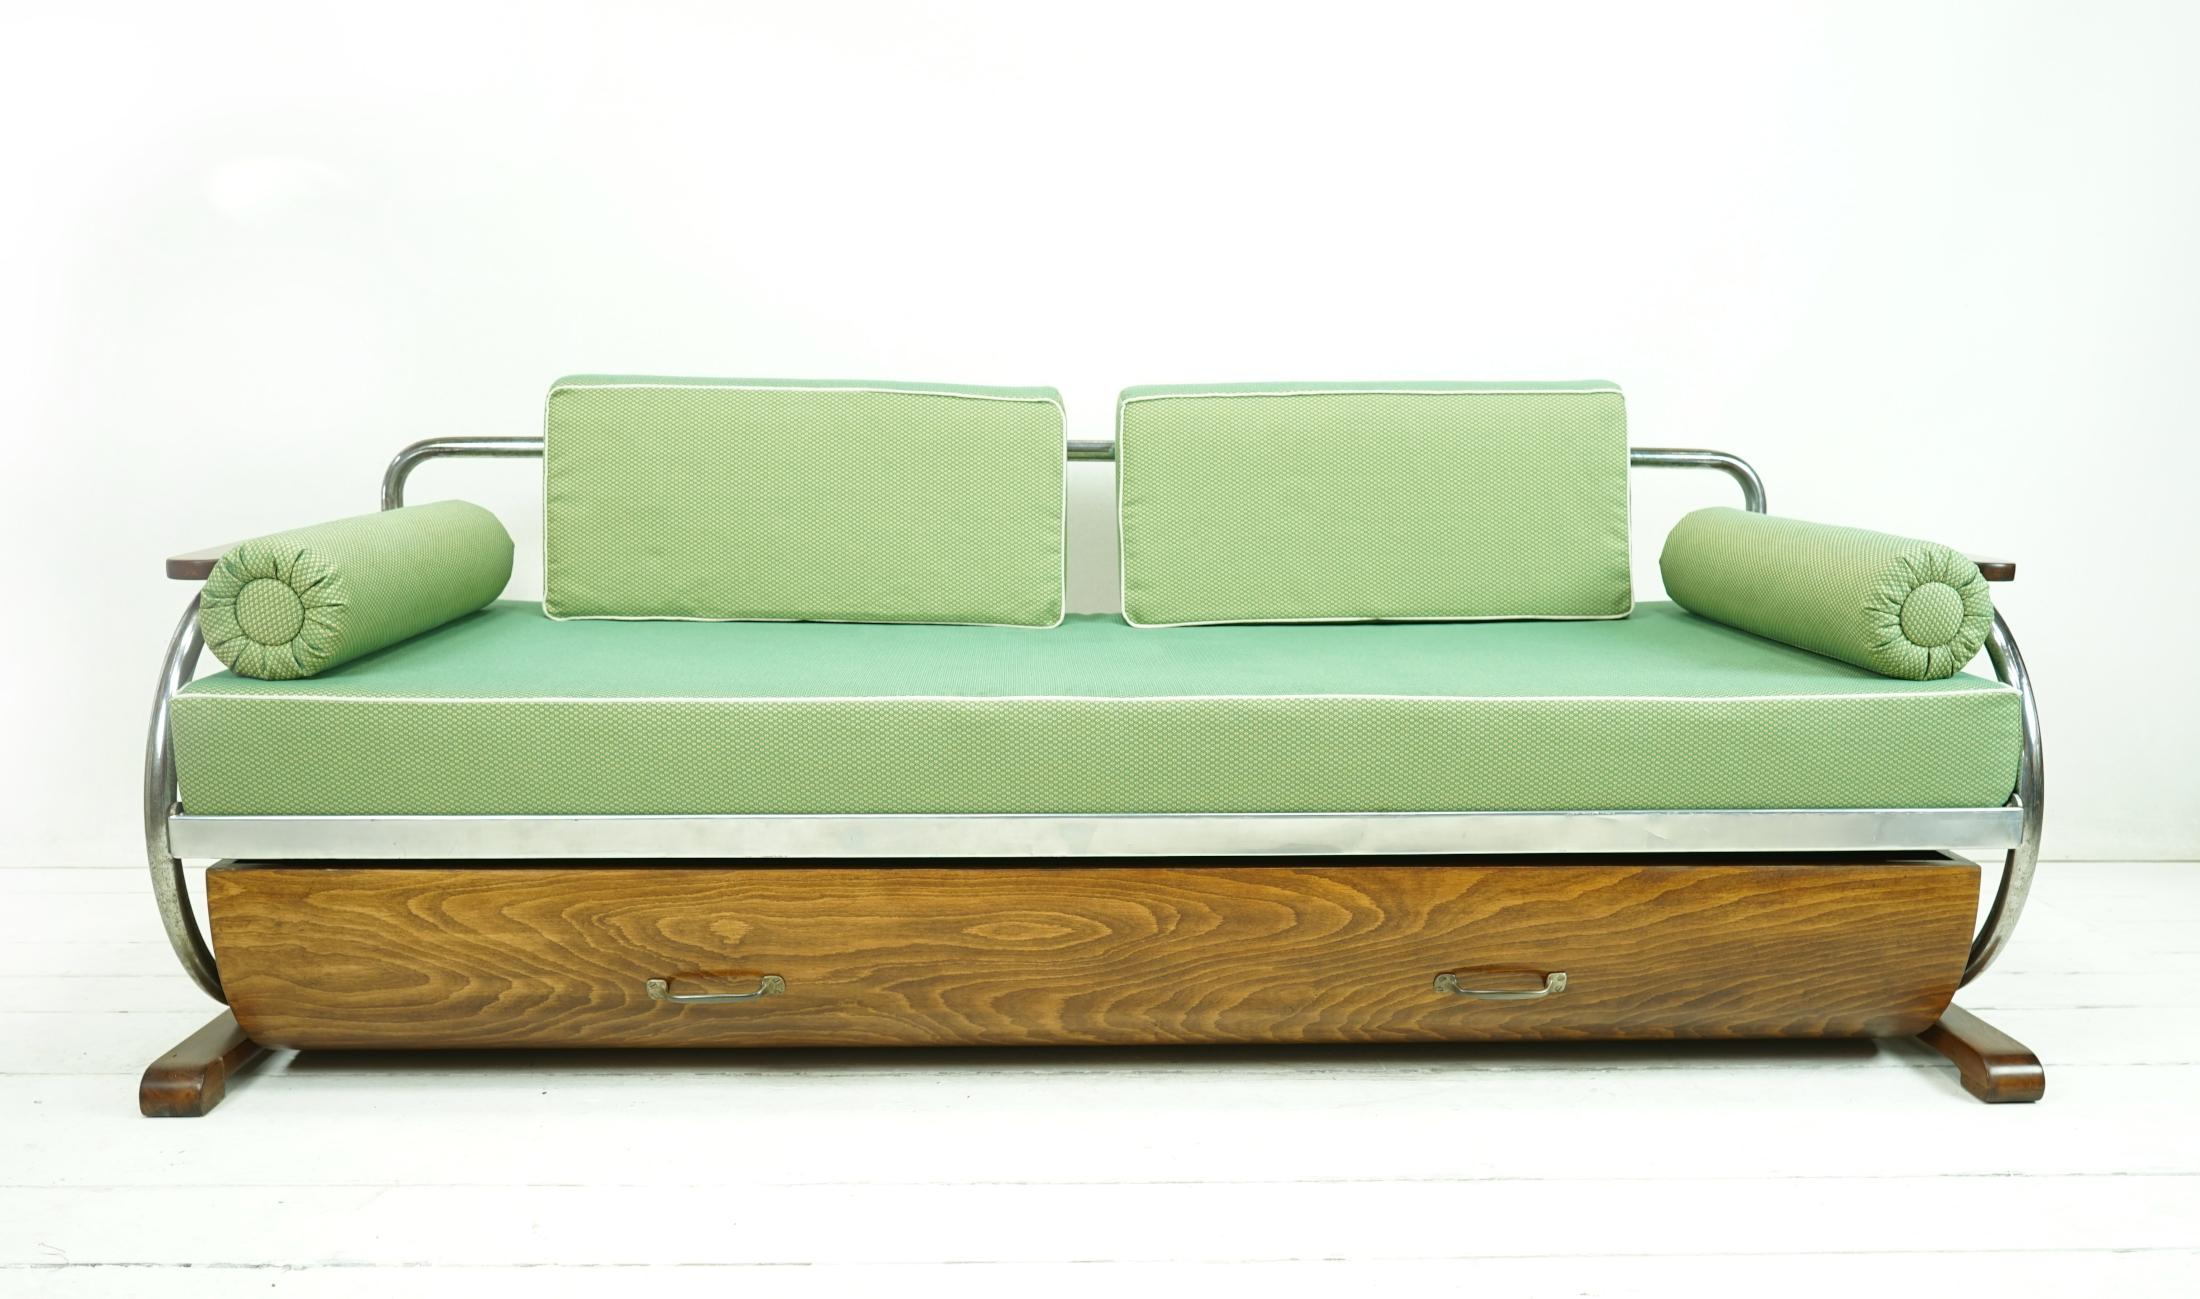 Objet : Canapé / lit de jour Vintage

Époque : vers 1935

Style : Bauhaus

Design/One : Gottwald

Dimensions :
H 80 (hauteur d'assise 44) L 195 P 85

Confortable canapé 2 à 3 places, structure en tube d'acier chromé, parties latérales